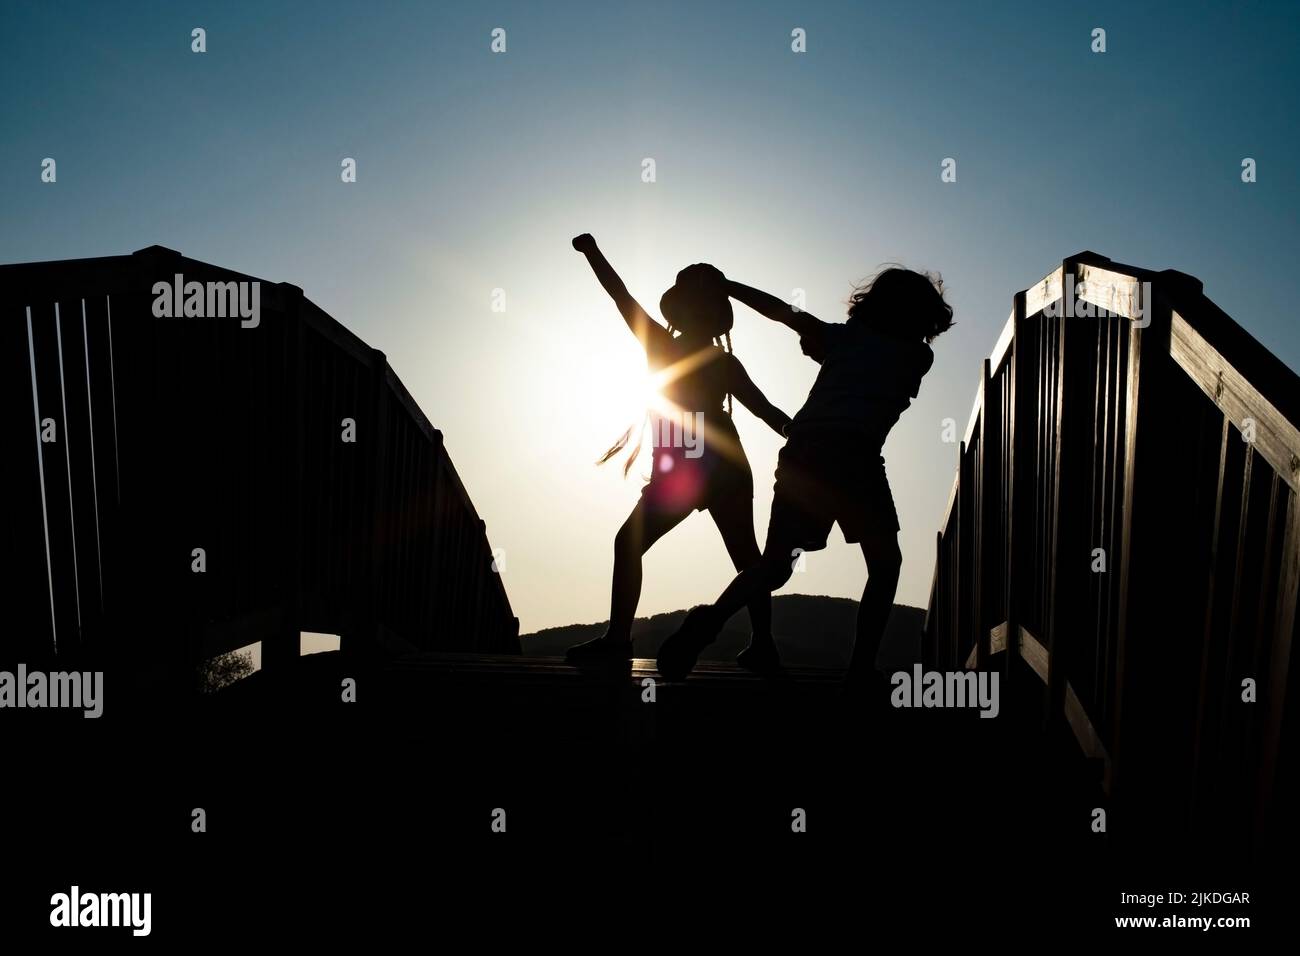 Junge und Mädchen Silhouetten tanzen auf einer Brücke gegen die Sonnenuntergangssonne Stockfoto